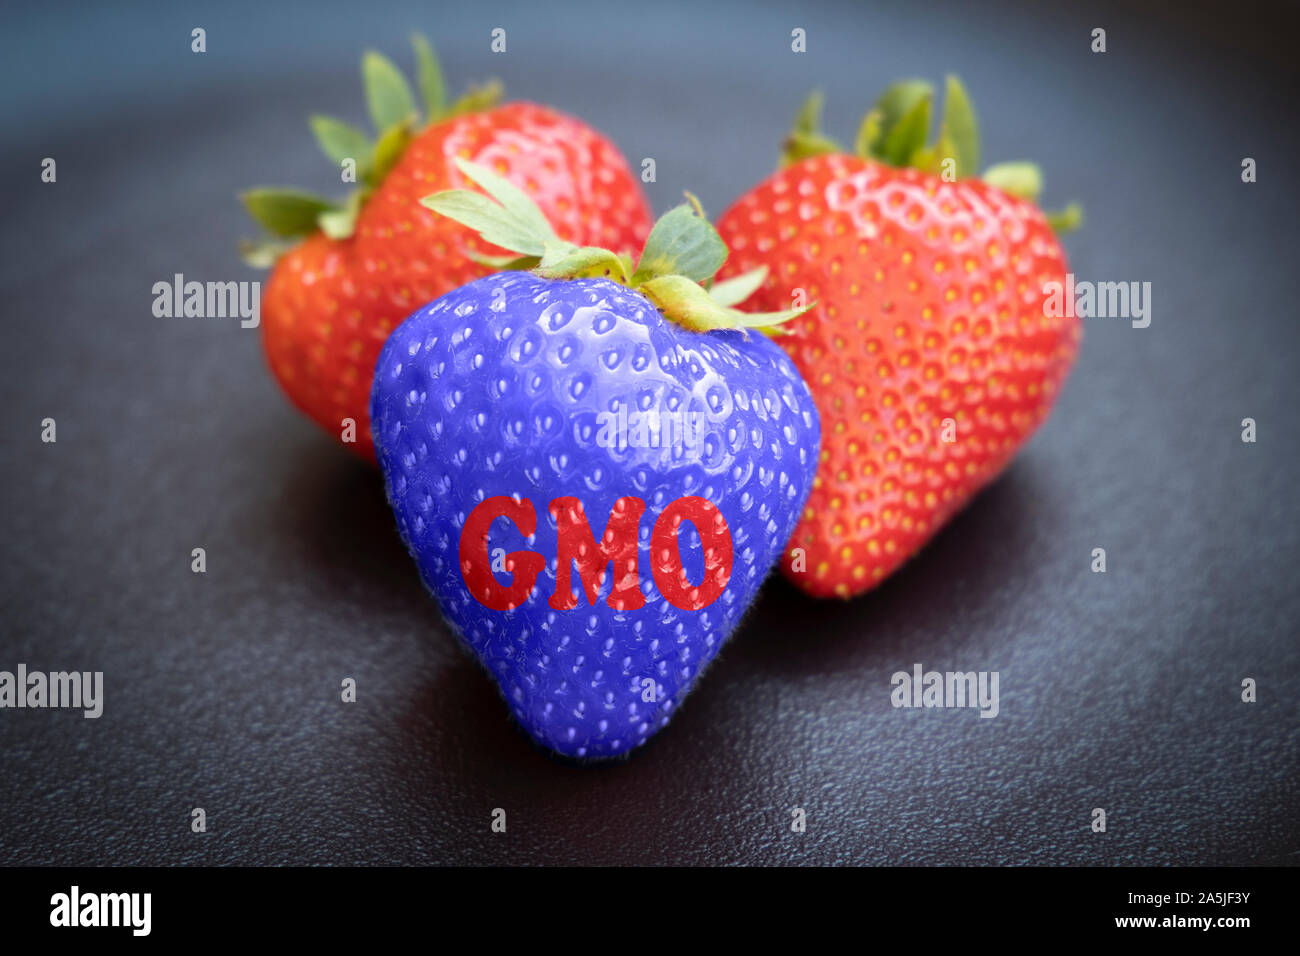 Omg strawberrie modificados genéticamente sobre la orgánica contra un fondo oscuro. Foto de stock